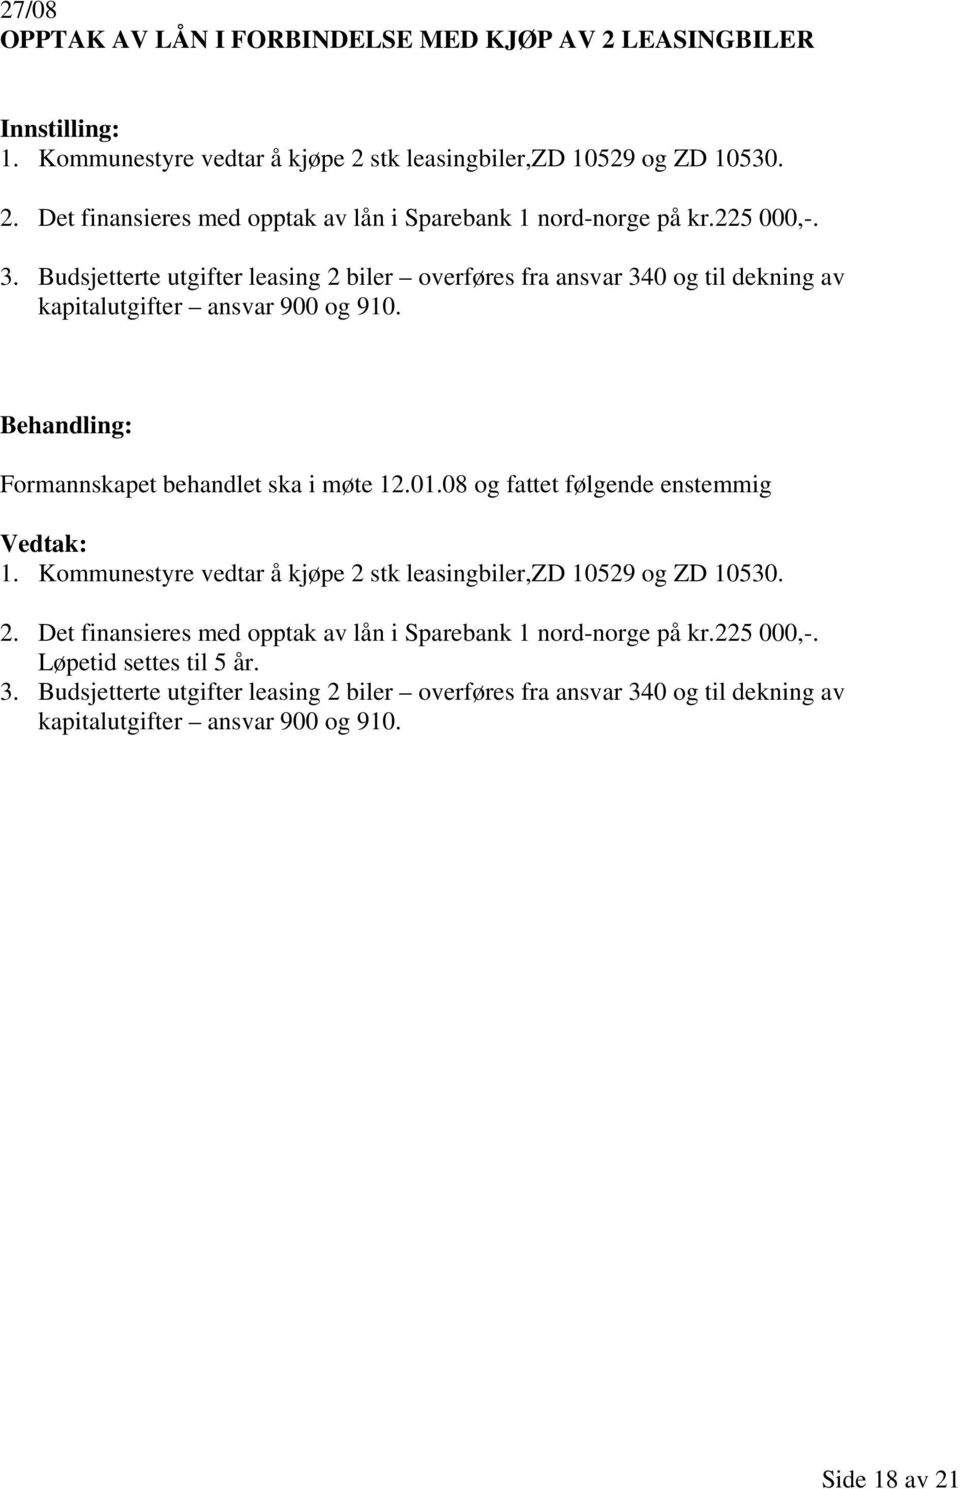 08 og fattet enstemmig 1. Kommunestyre vedtar å kjøpe 2 stk leasingbiler,zd 10529 og ZD 10530. 2. Det finansieres med opptak av lån i Sparebank 1 nord-norge på kr.225 000,-.